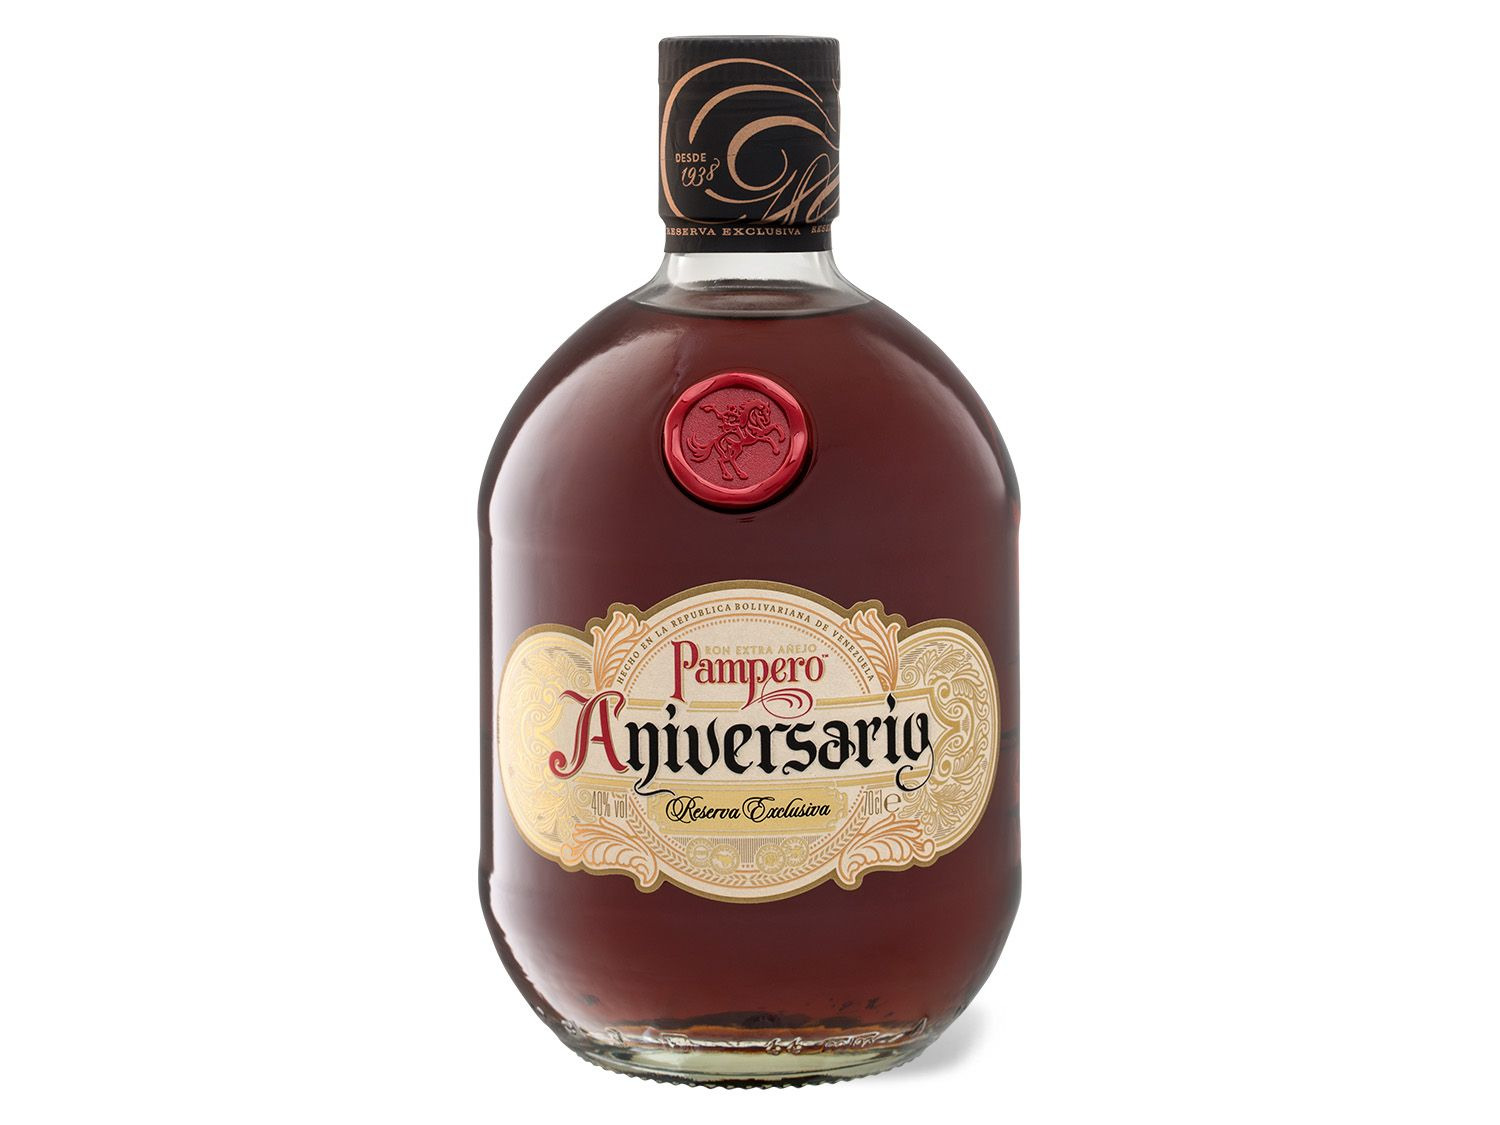 PAMPERO Aniversario Reserva Exclusiva in Rum Añejo Led…